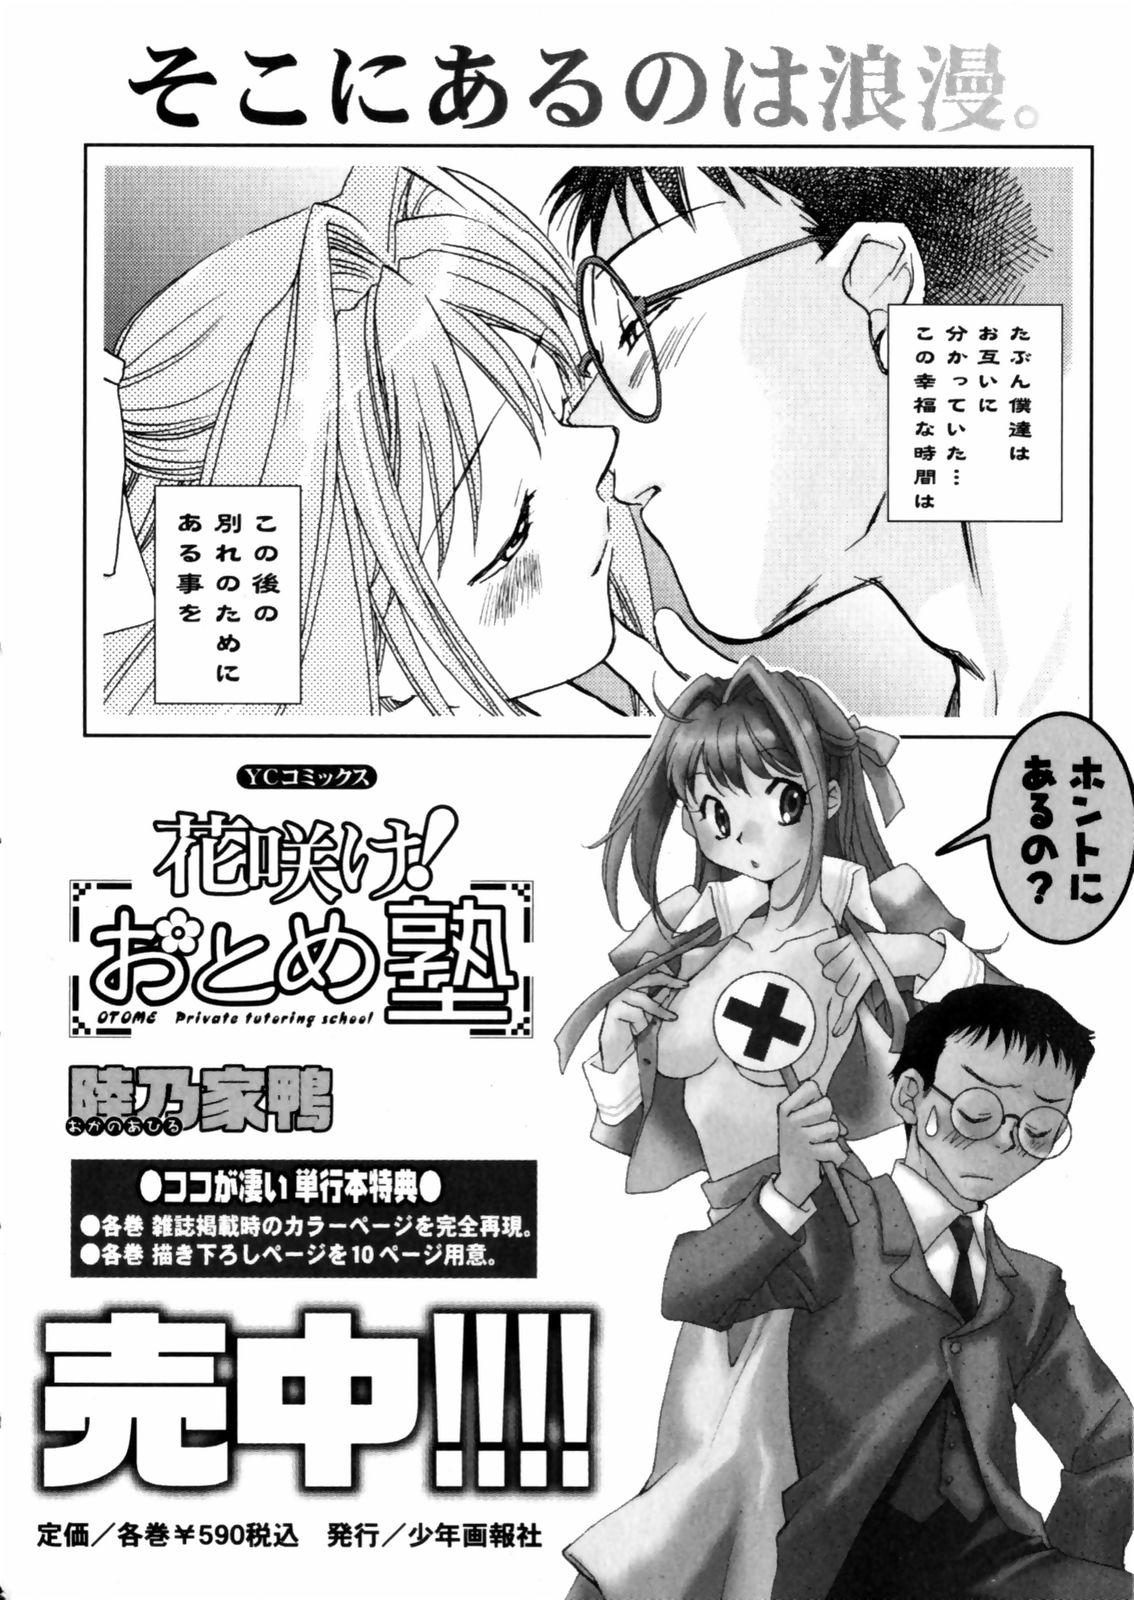 [Okano Ahiru] Hanasake ! Otome Juku (Otome Private Tutoring School) Vol.2 163